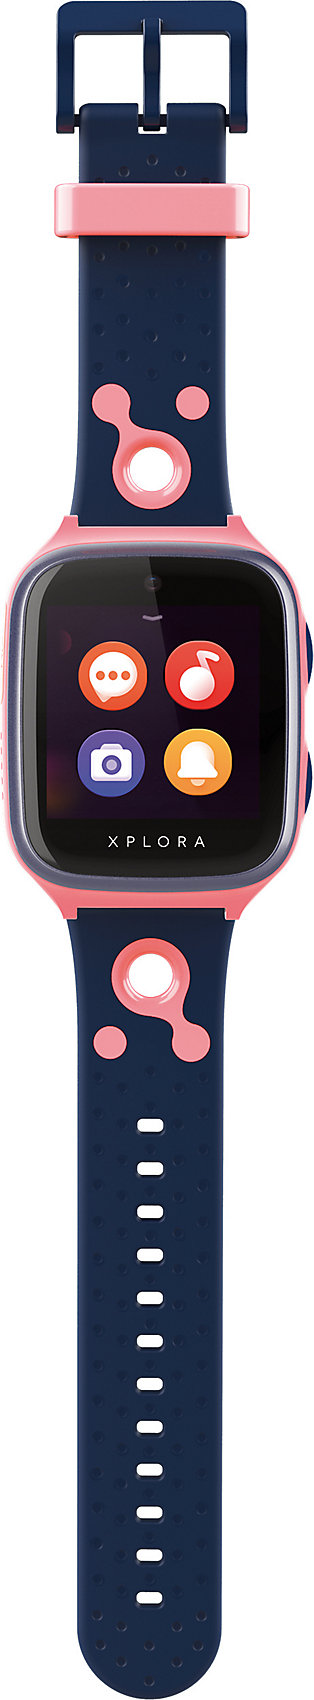 neu xplora 4  smartwatch für kinder  sim free pink